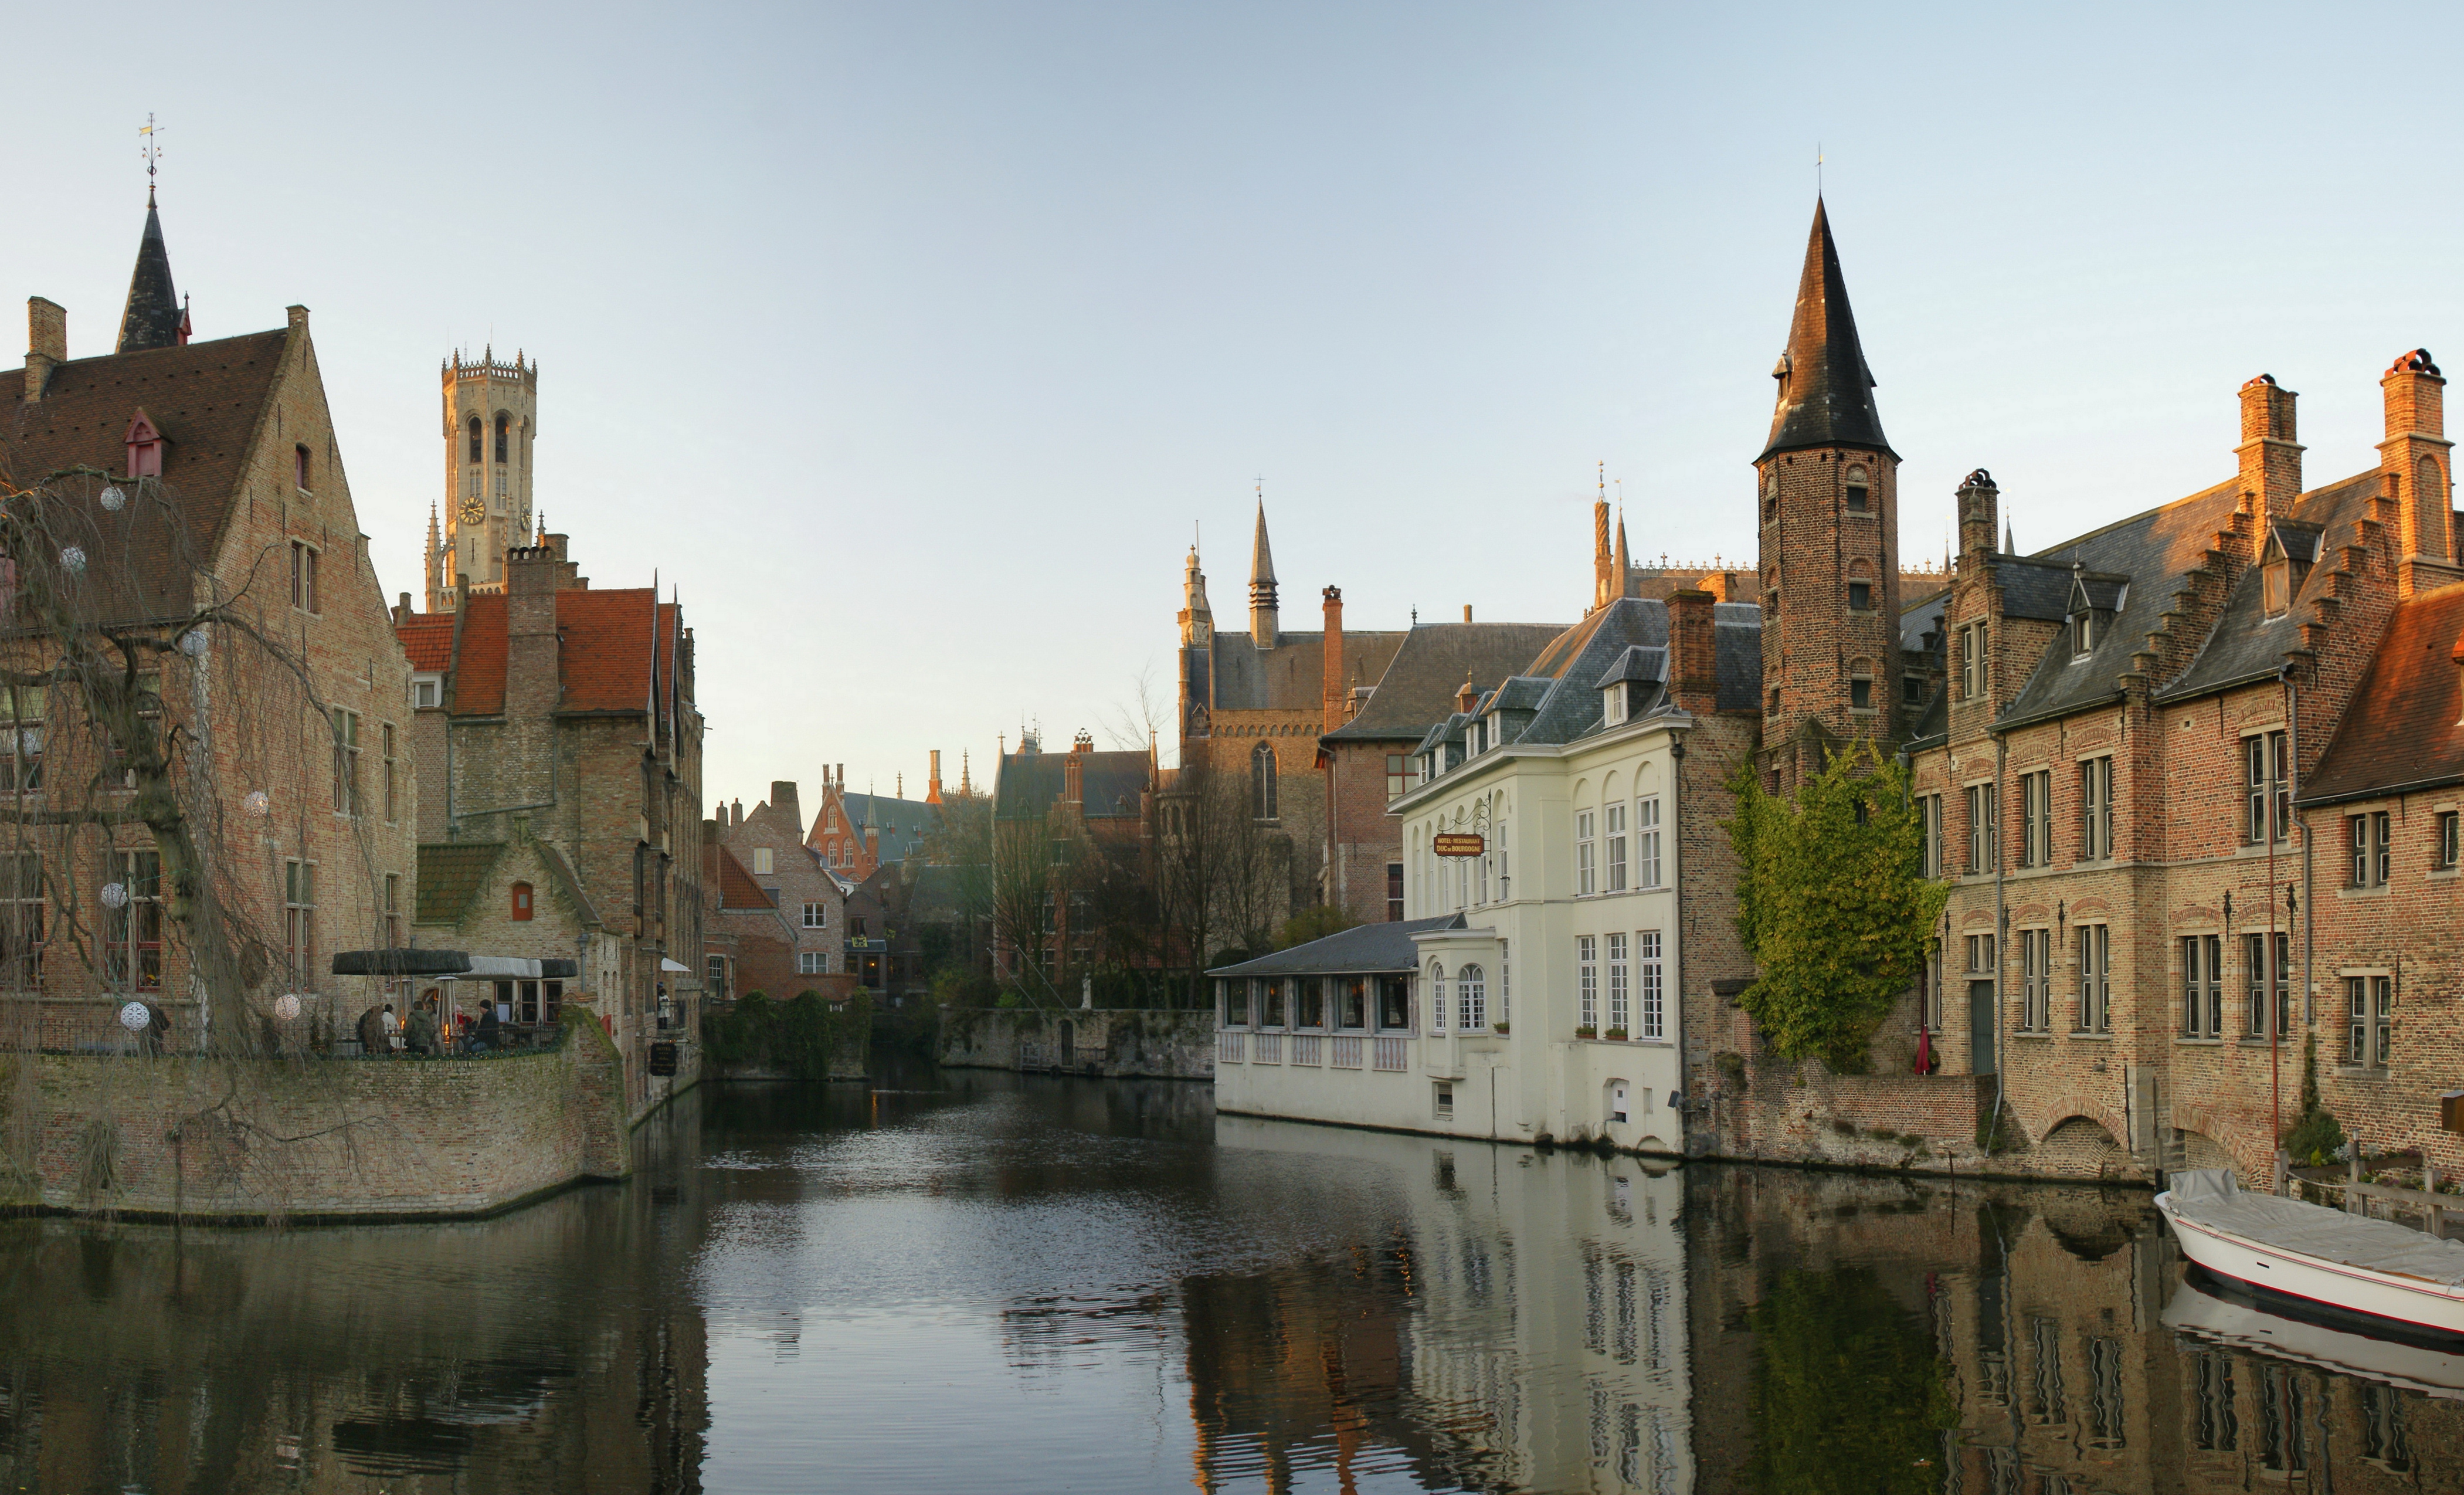 File:Rozenhoedkaai Brugge.jpg - Wikimedia Commons